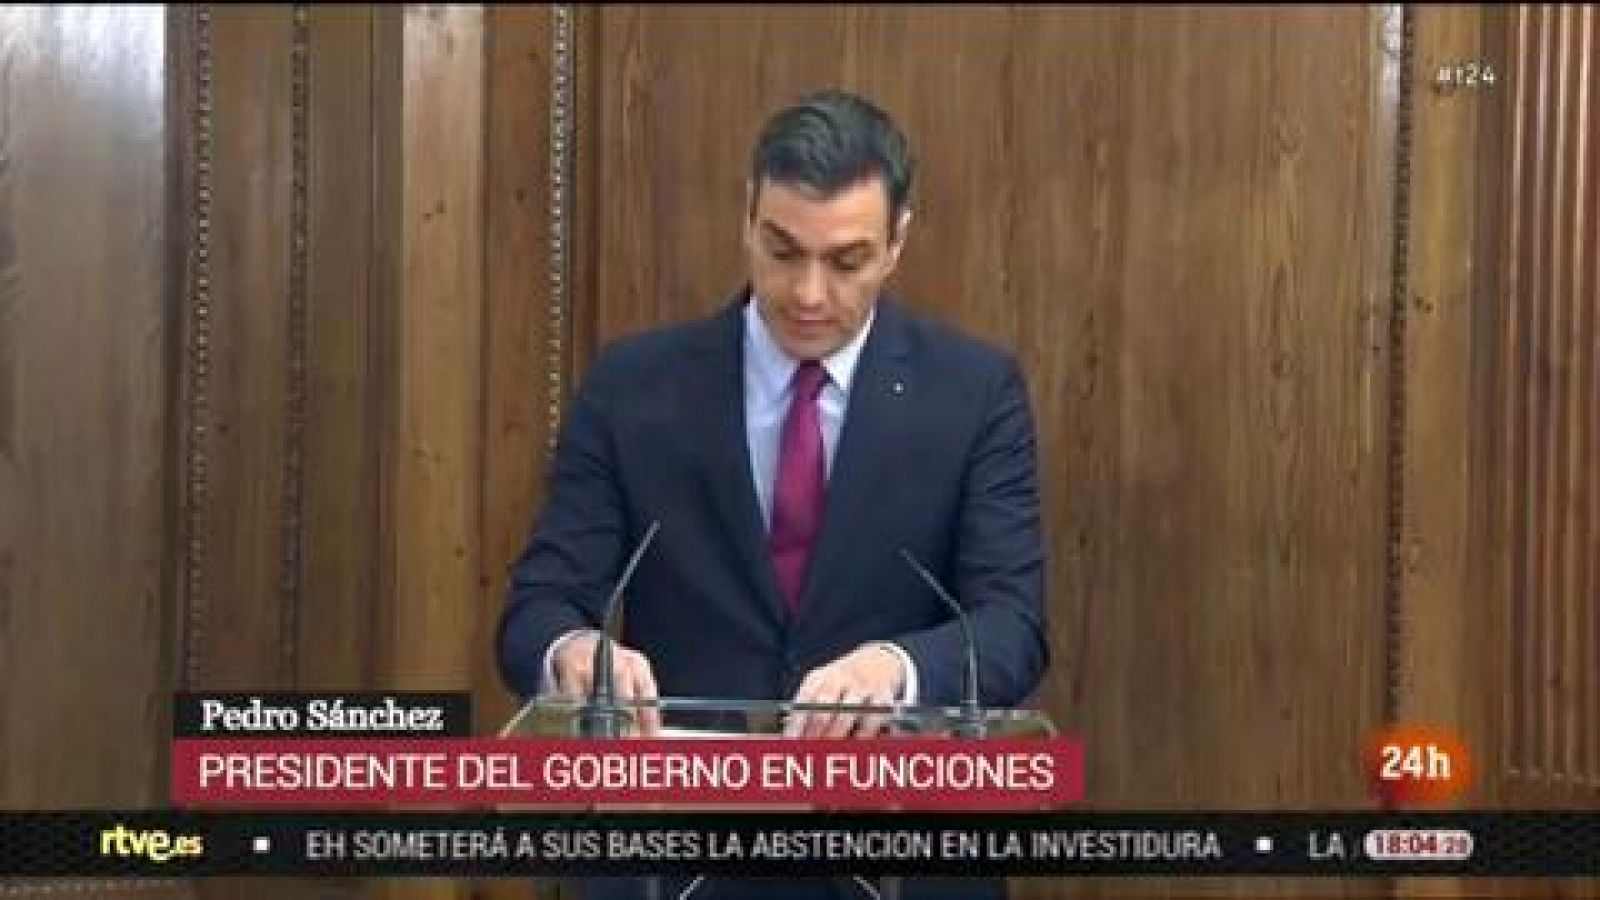 Sánchez e Iglesias abogan por un gobierno basado en la "justicia social" y el "diálogo" e instan a un pronta investidura